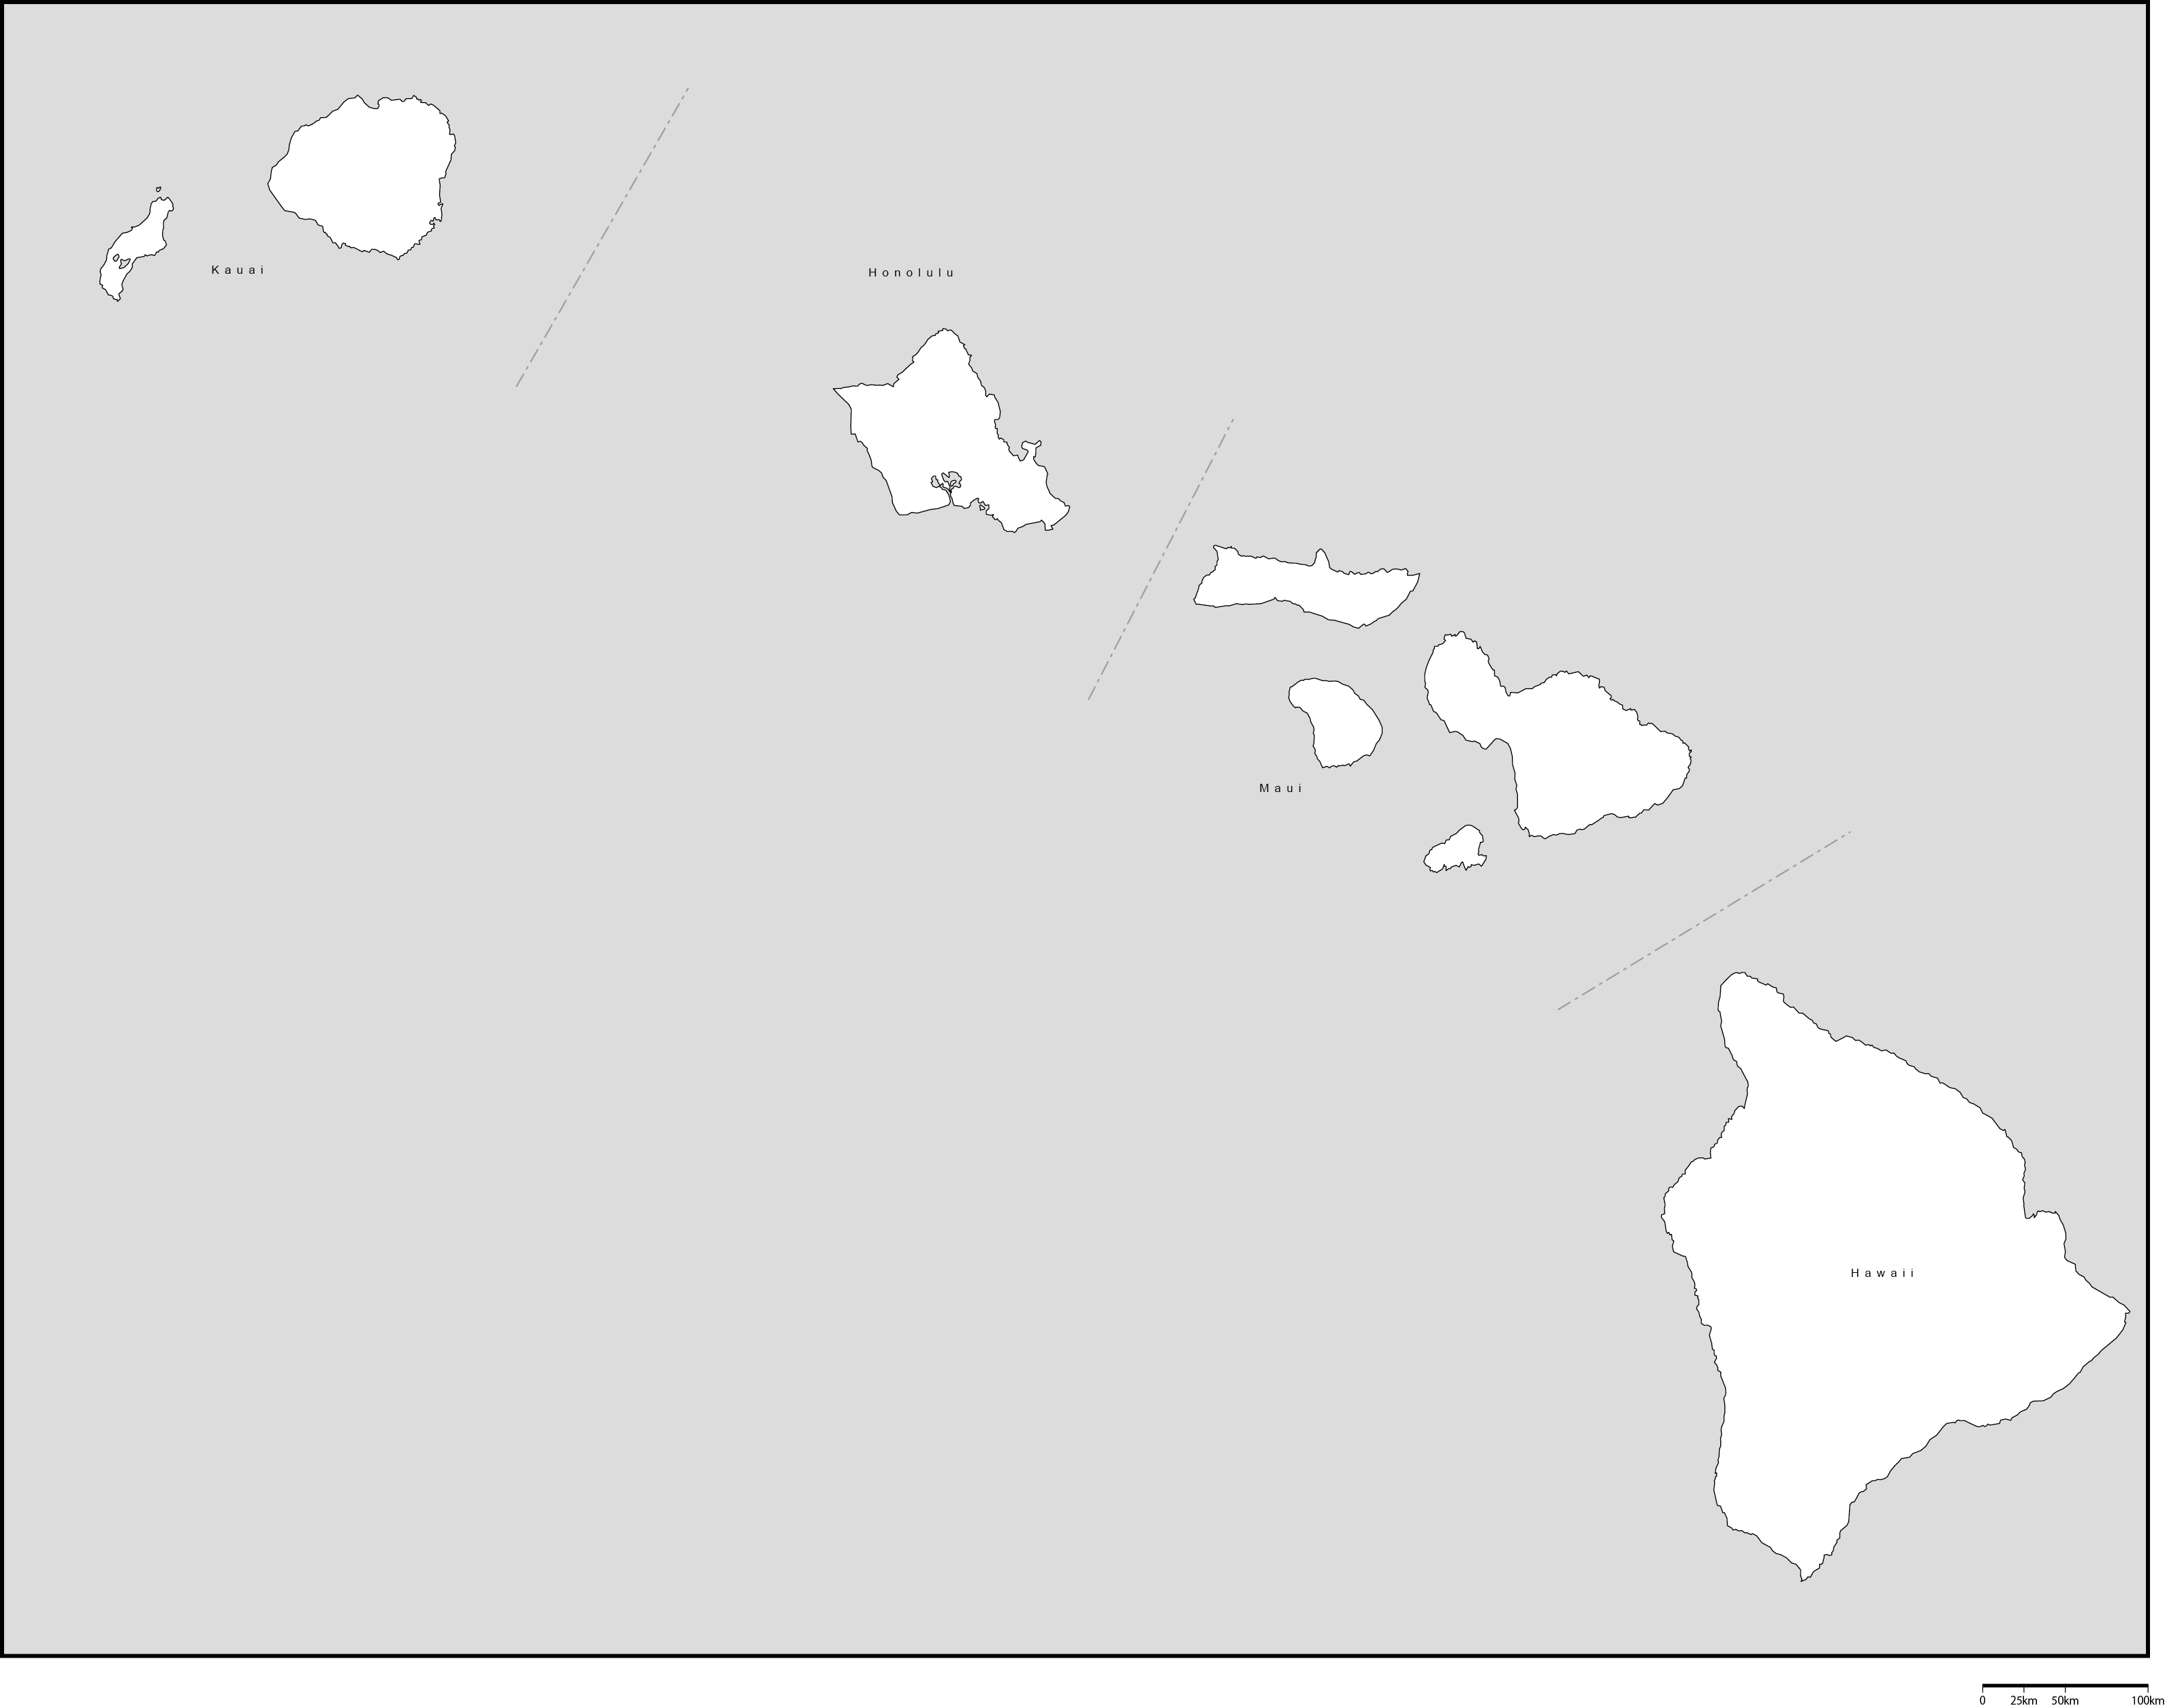 ハワイ州郡分け白地図郡名あり(英語)フリーデータの画像